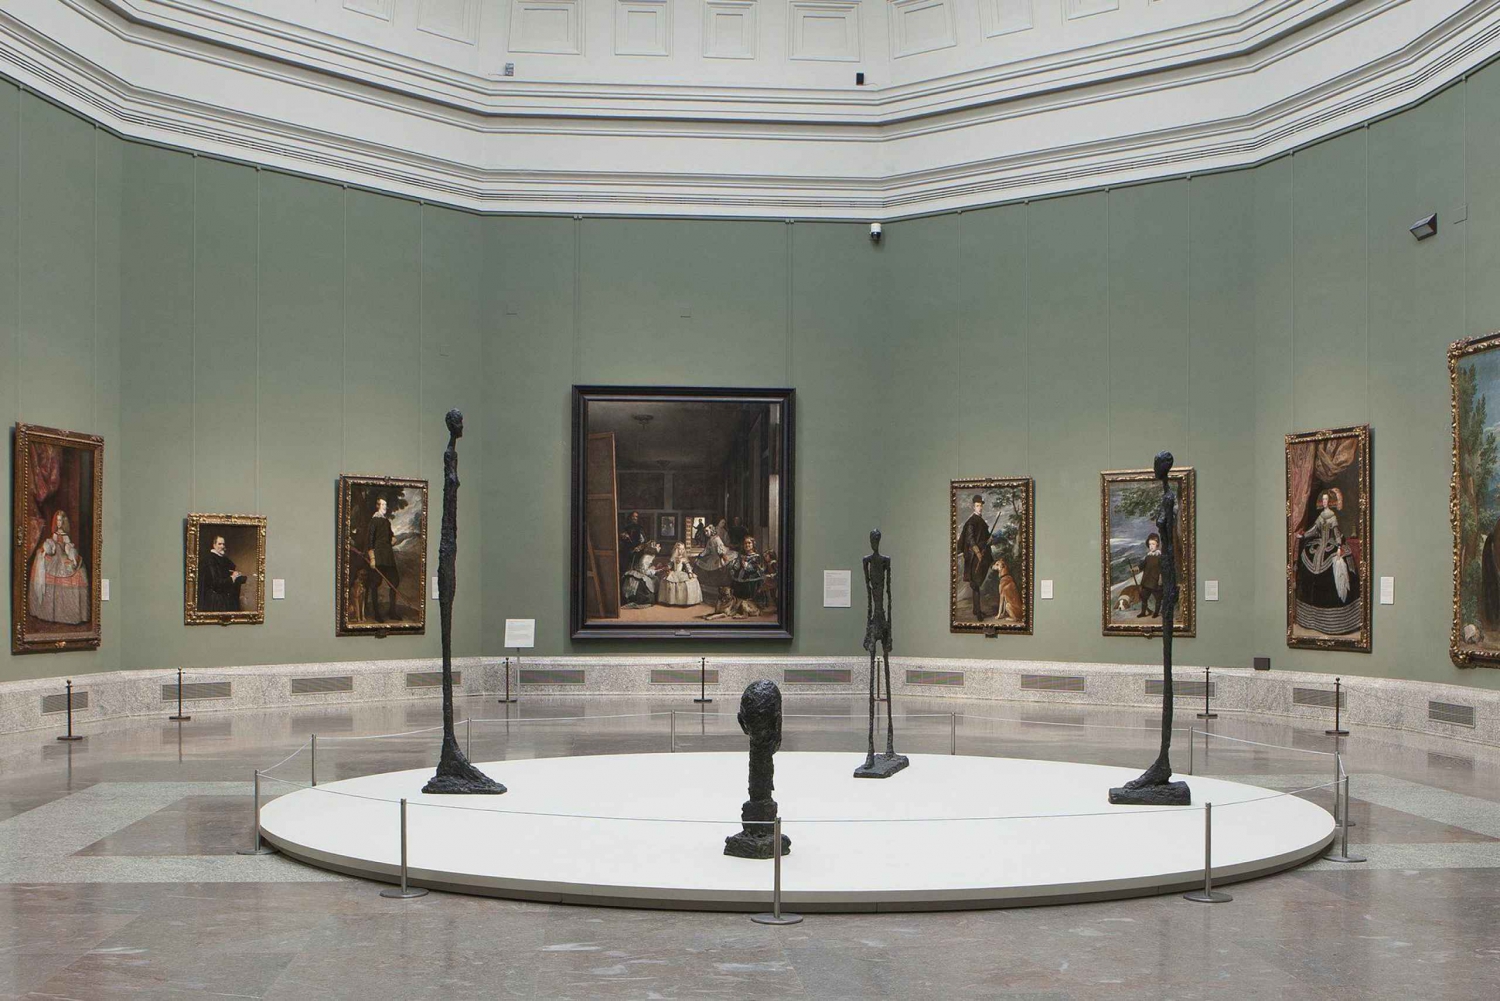 Madri: Excursão aos Museus do Prado, Reina Sofía e Thyssen-Bornemisza